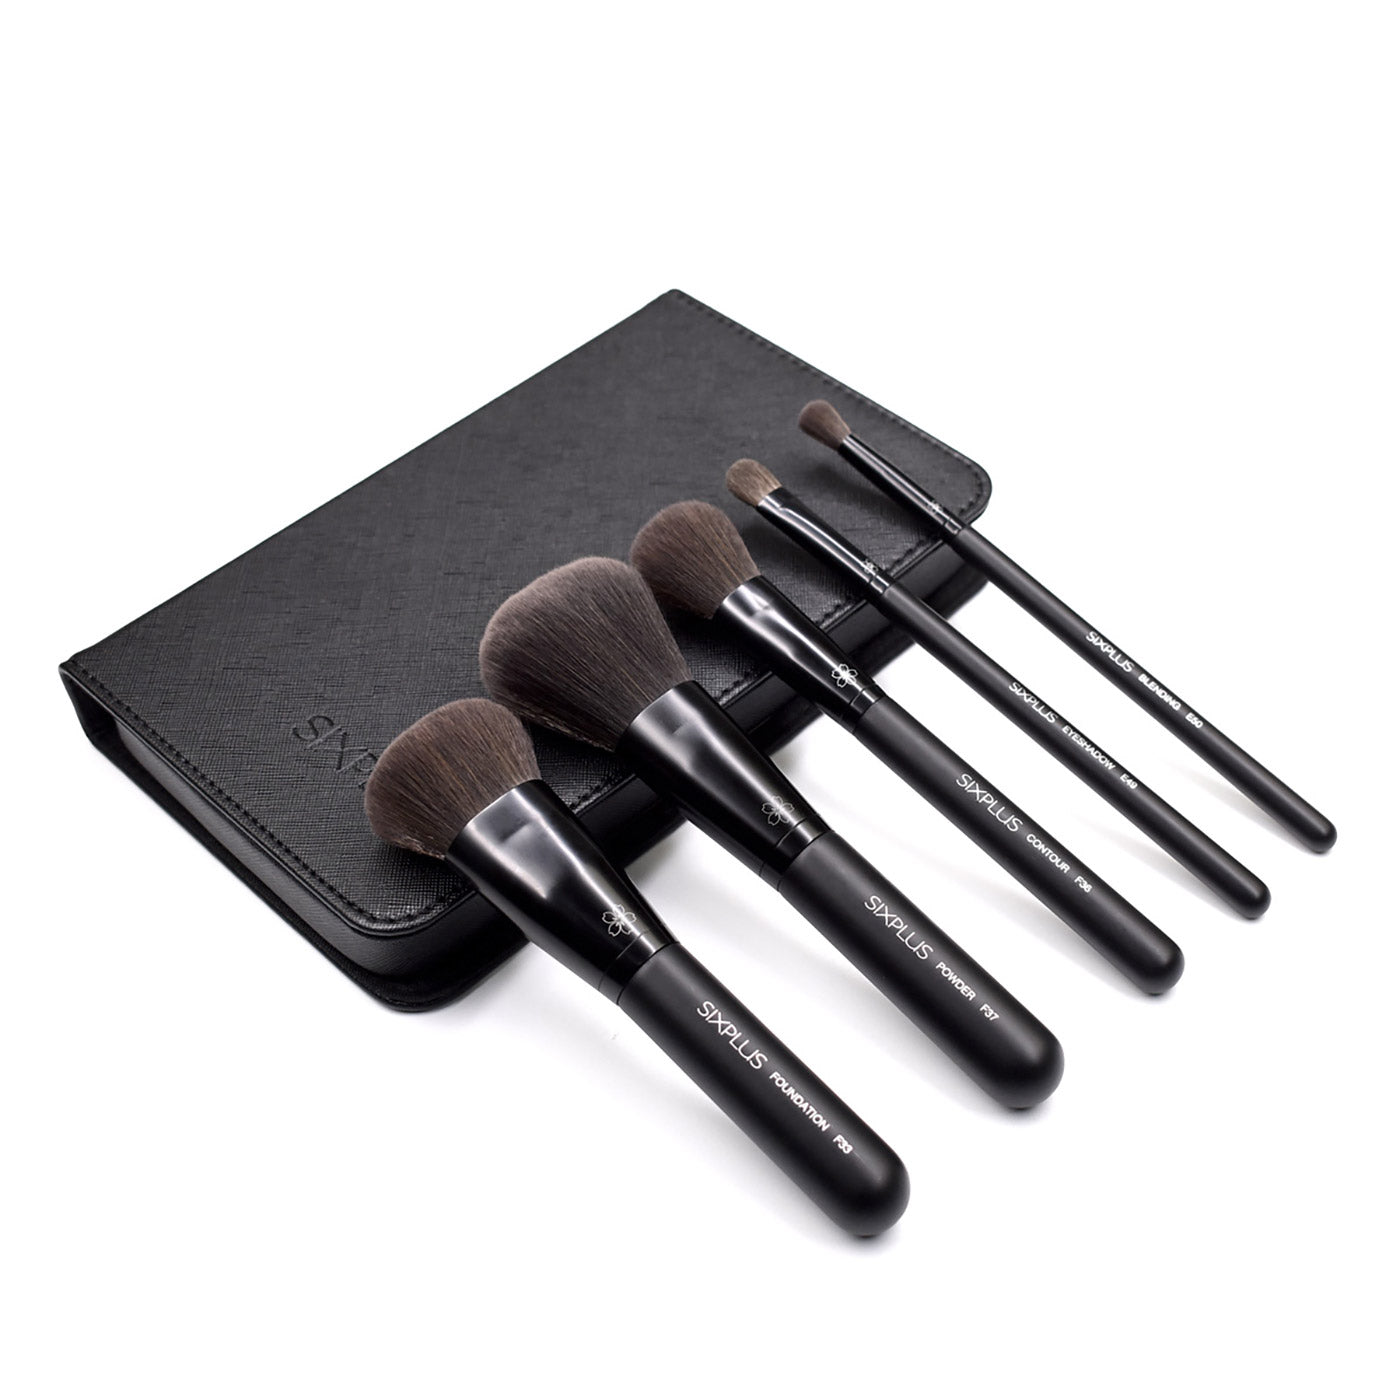 5Pcs Black Makeup Brush Set